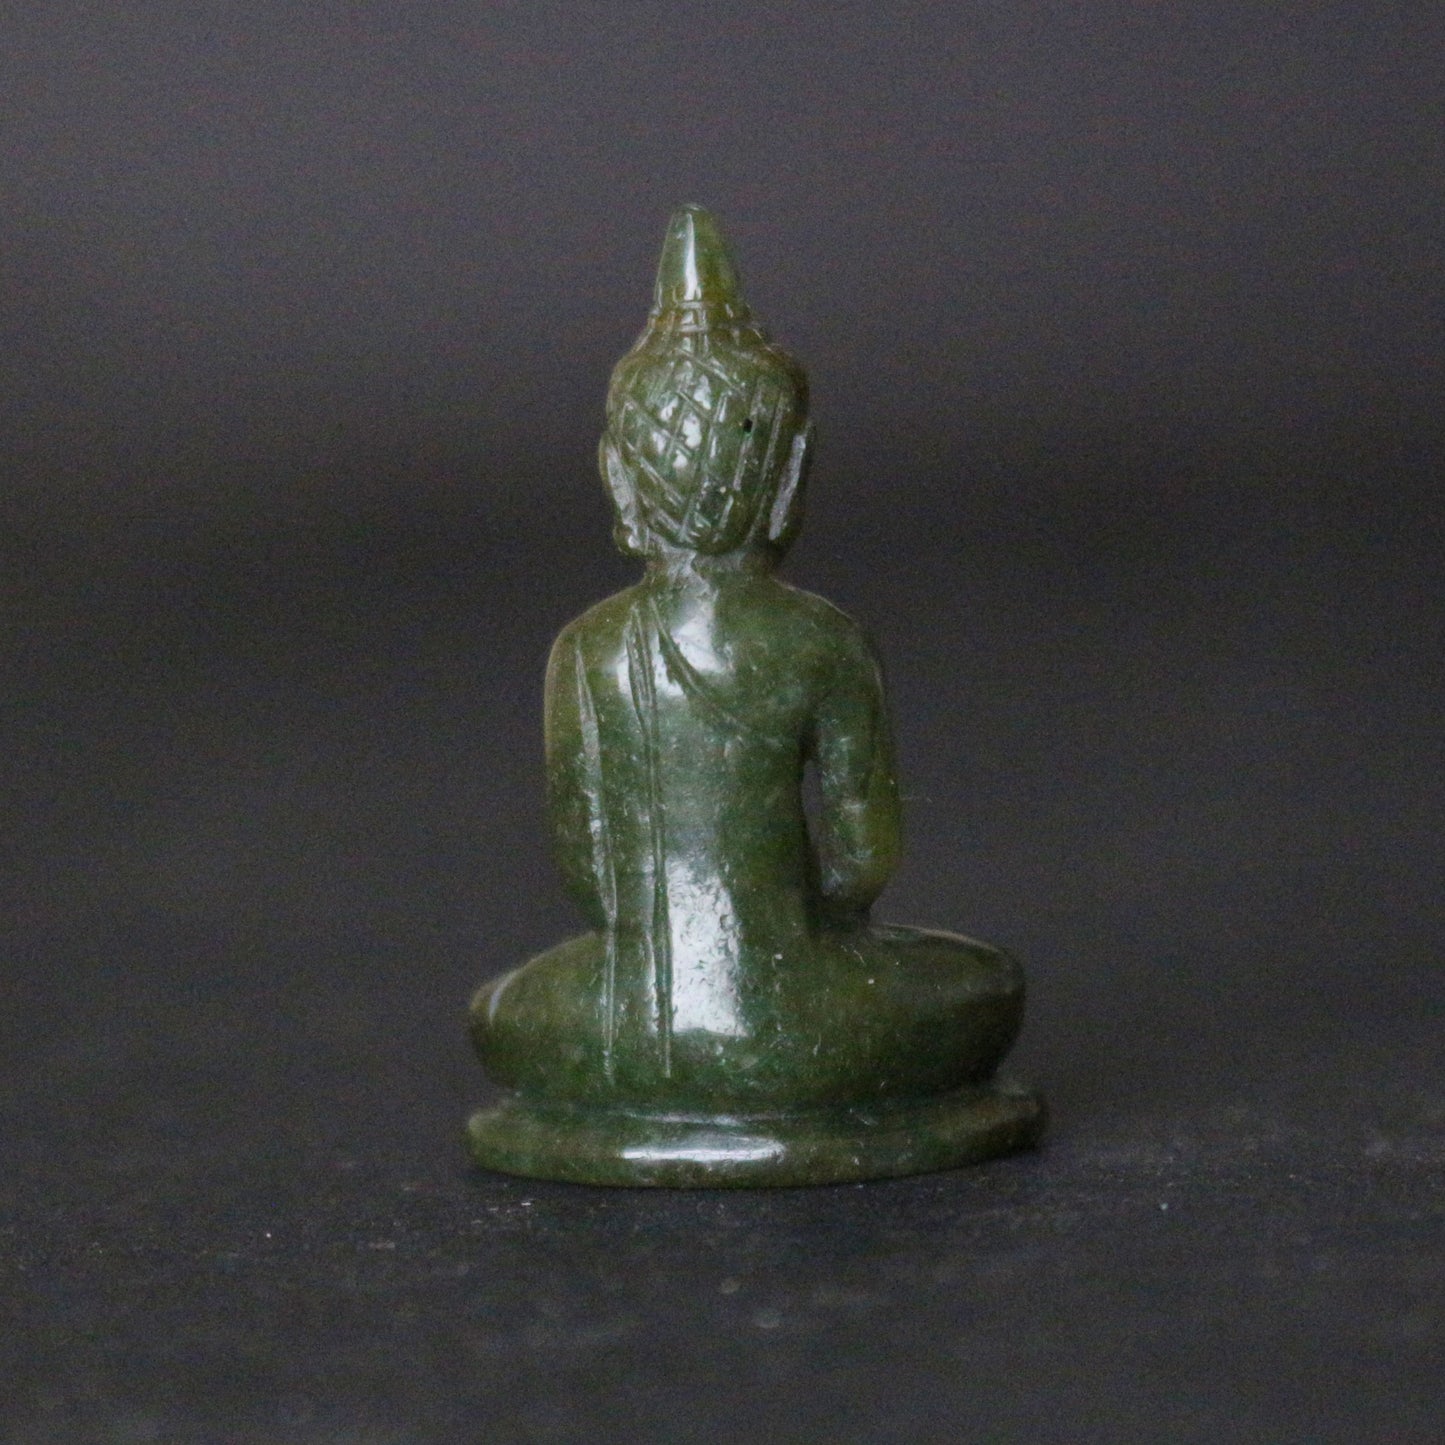 Green Jade Buddha Statue